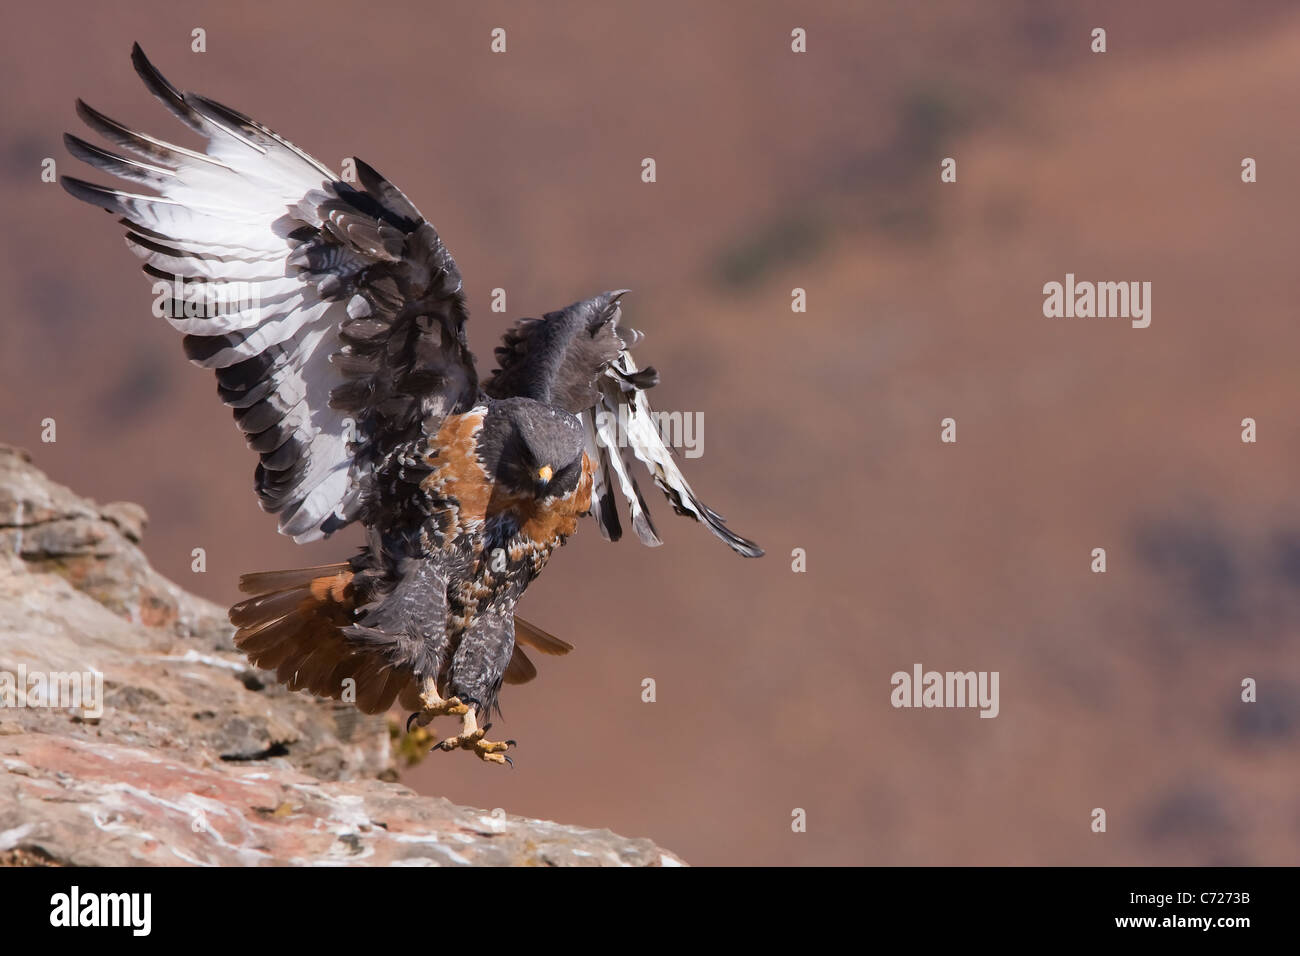 jackal buzzard in flight Stock Photo